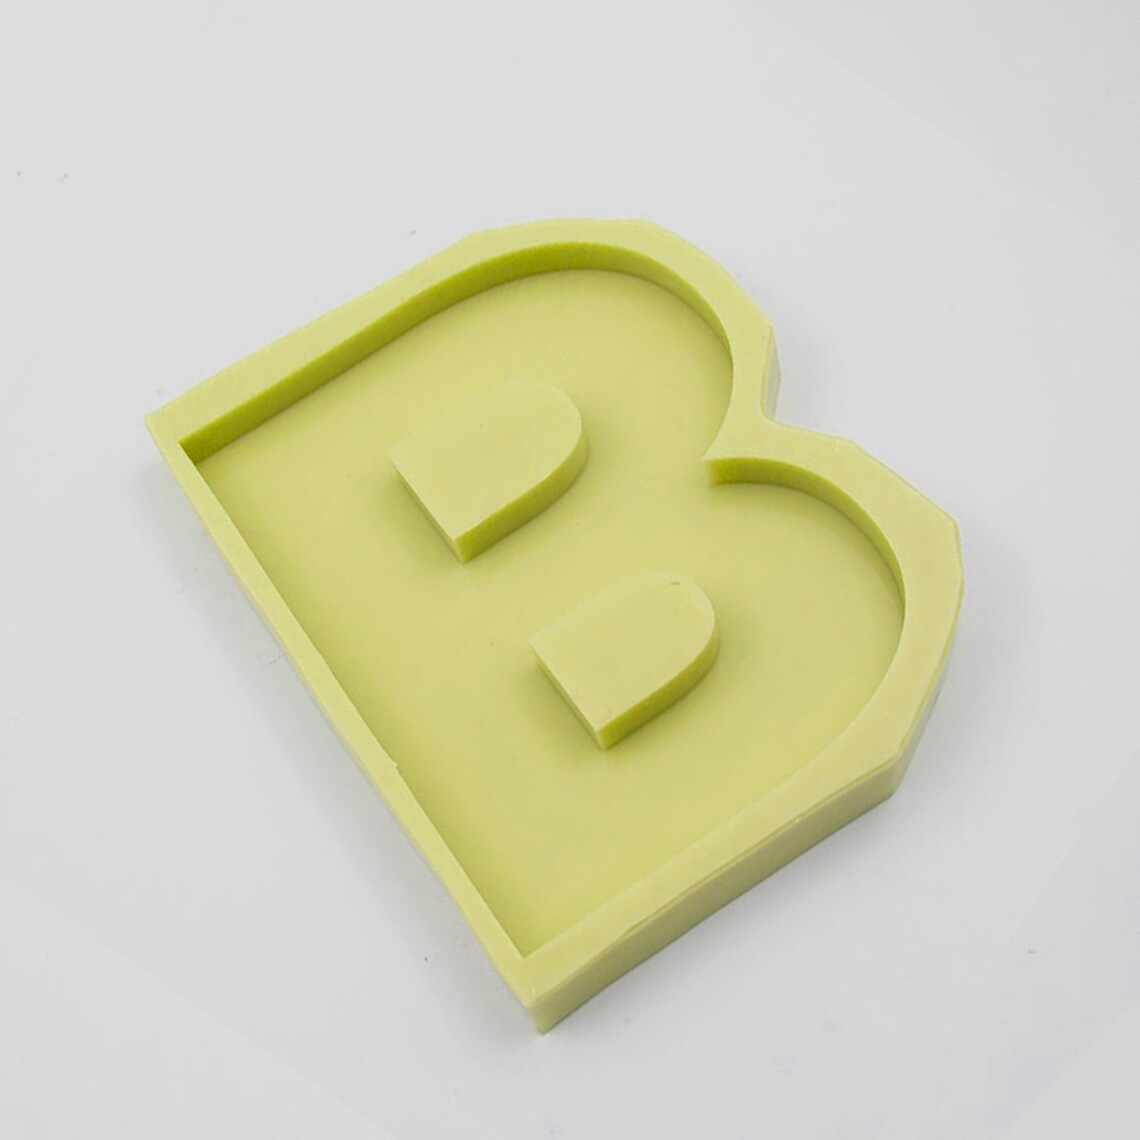 Custom Large Letter Molds Letter Molds For Resin & Concrete | Etsy